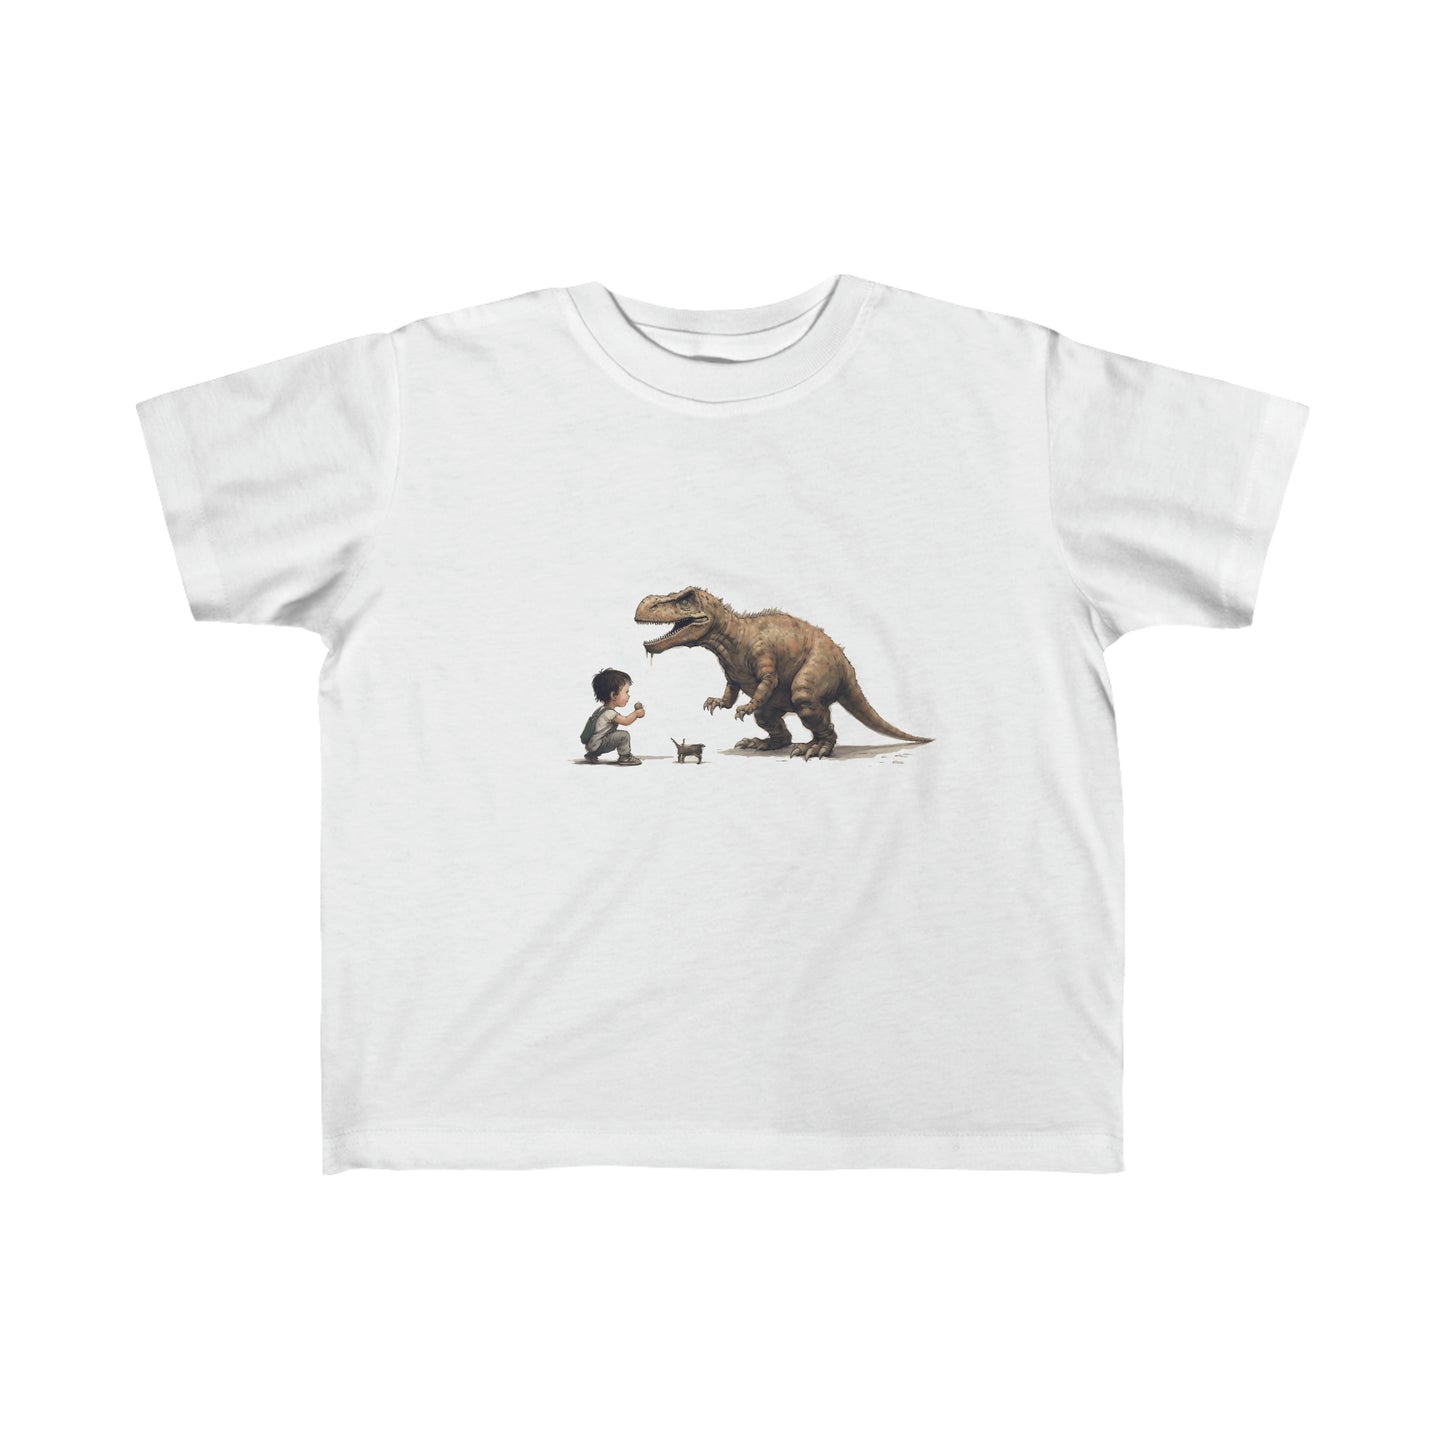 My Dog T-Rex Toddler's Fine Jersey Tee | Small Boy Tyrannosaurus Rex Dinosaur Lizard Best Friends T-shirt Top Big Dog